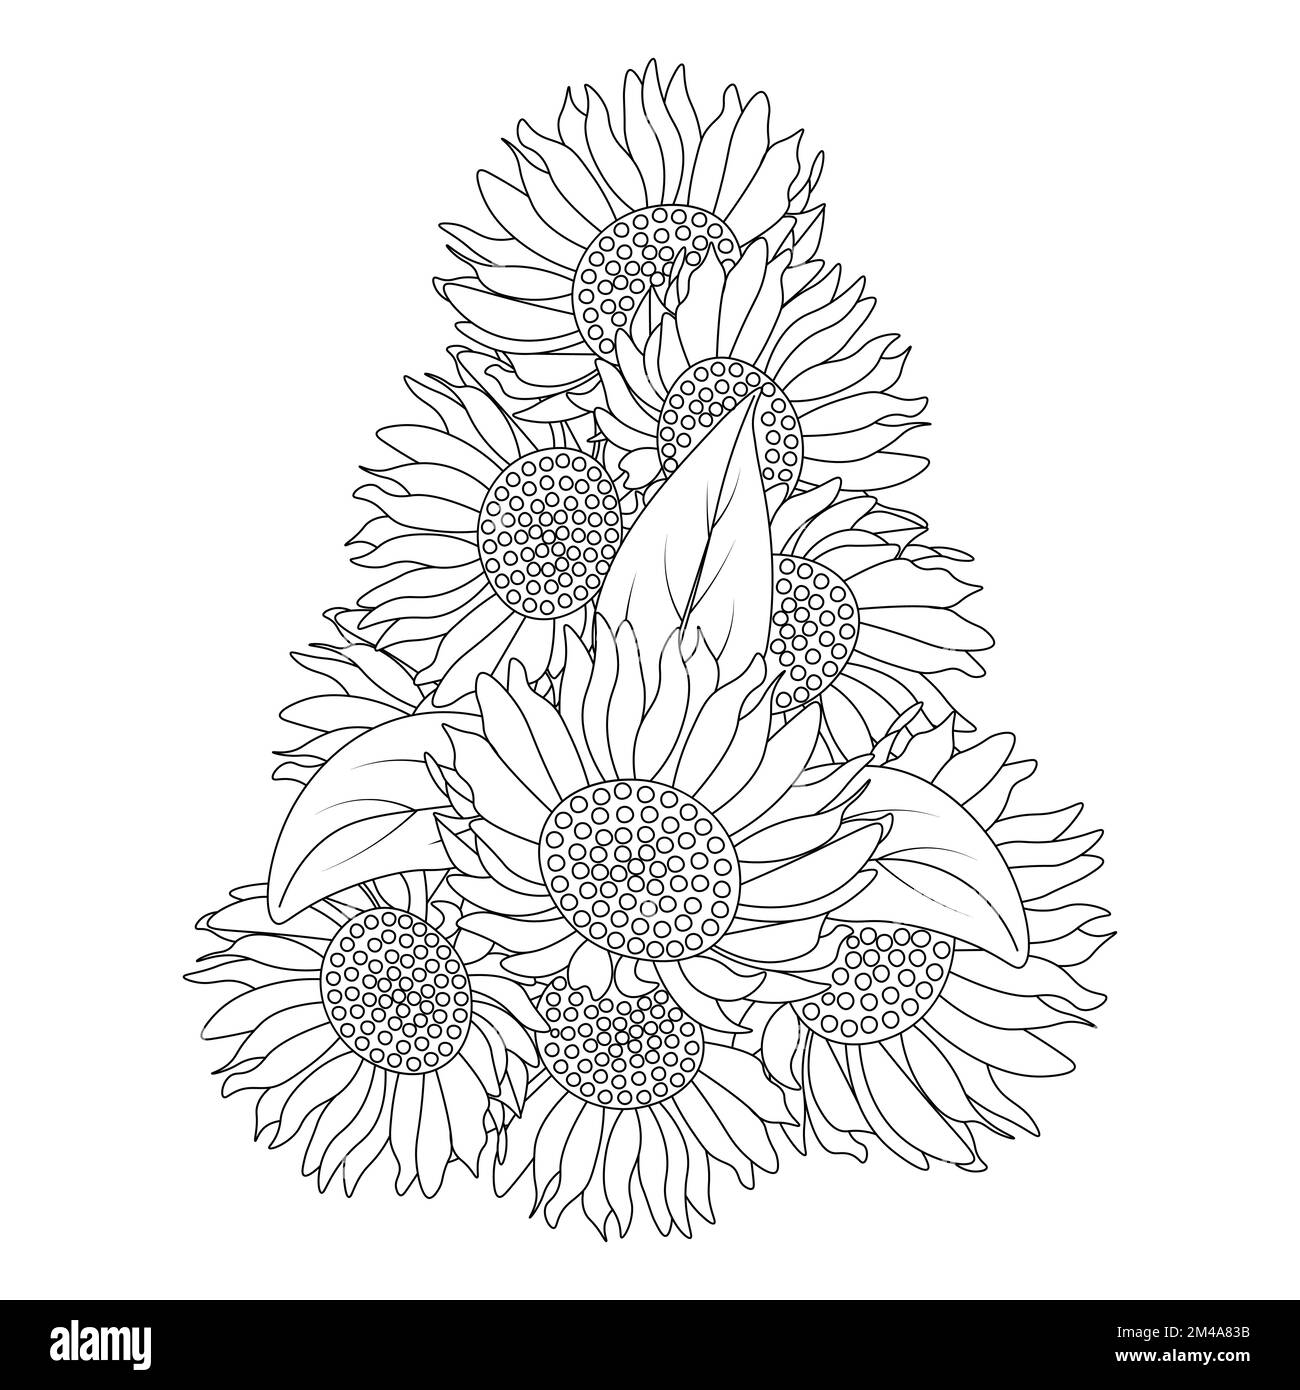 Sonnenblumen Zen Doodle Art Zeichnung im Vektordesign mit blühenden Blütenblättern für Erwachsene Malbuch Seite Stock Vektor